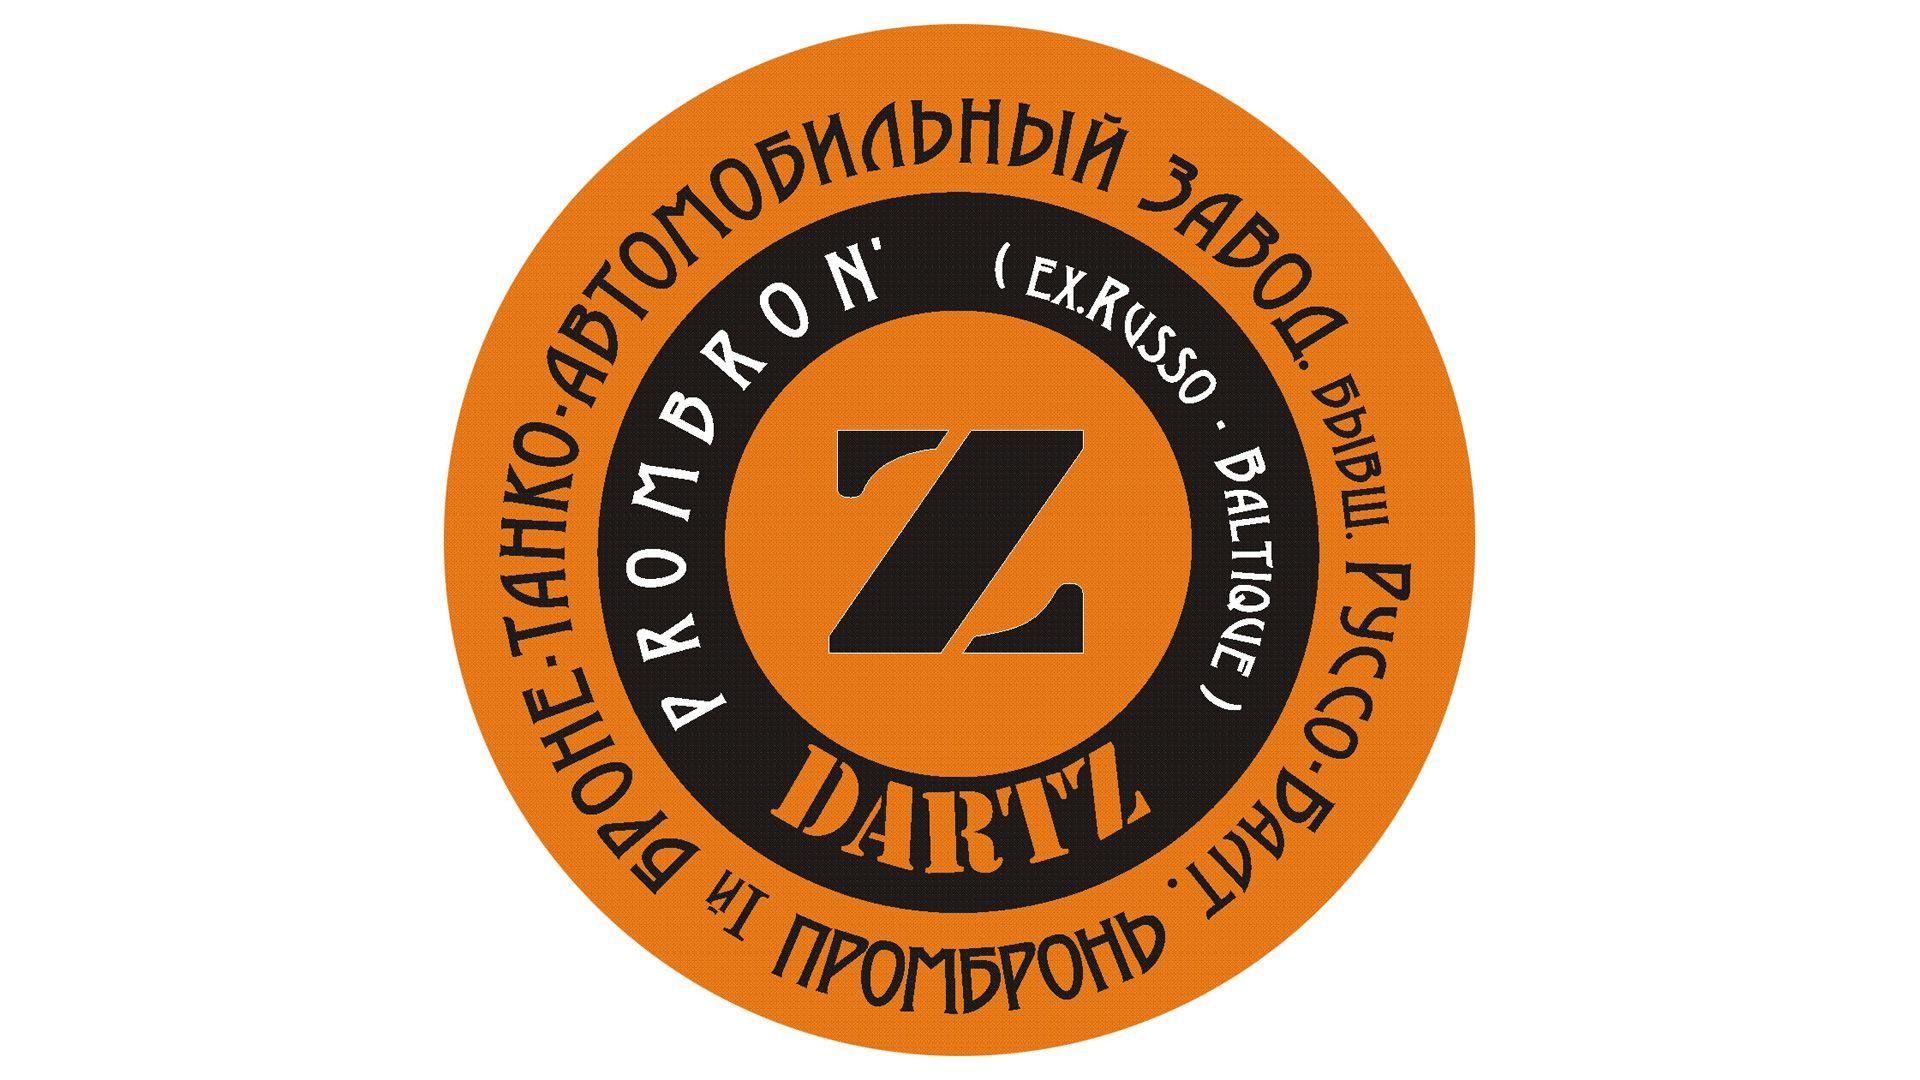 Prombron Car Logo - Dartz Logo, Information | Carlogos.org